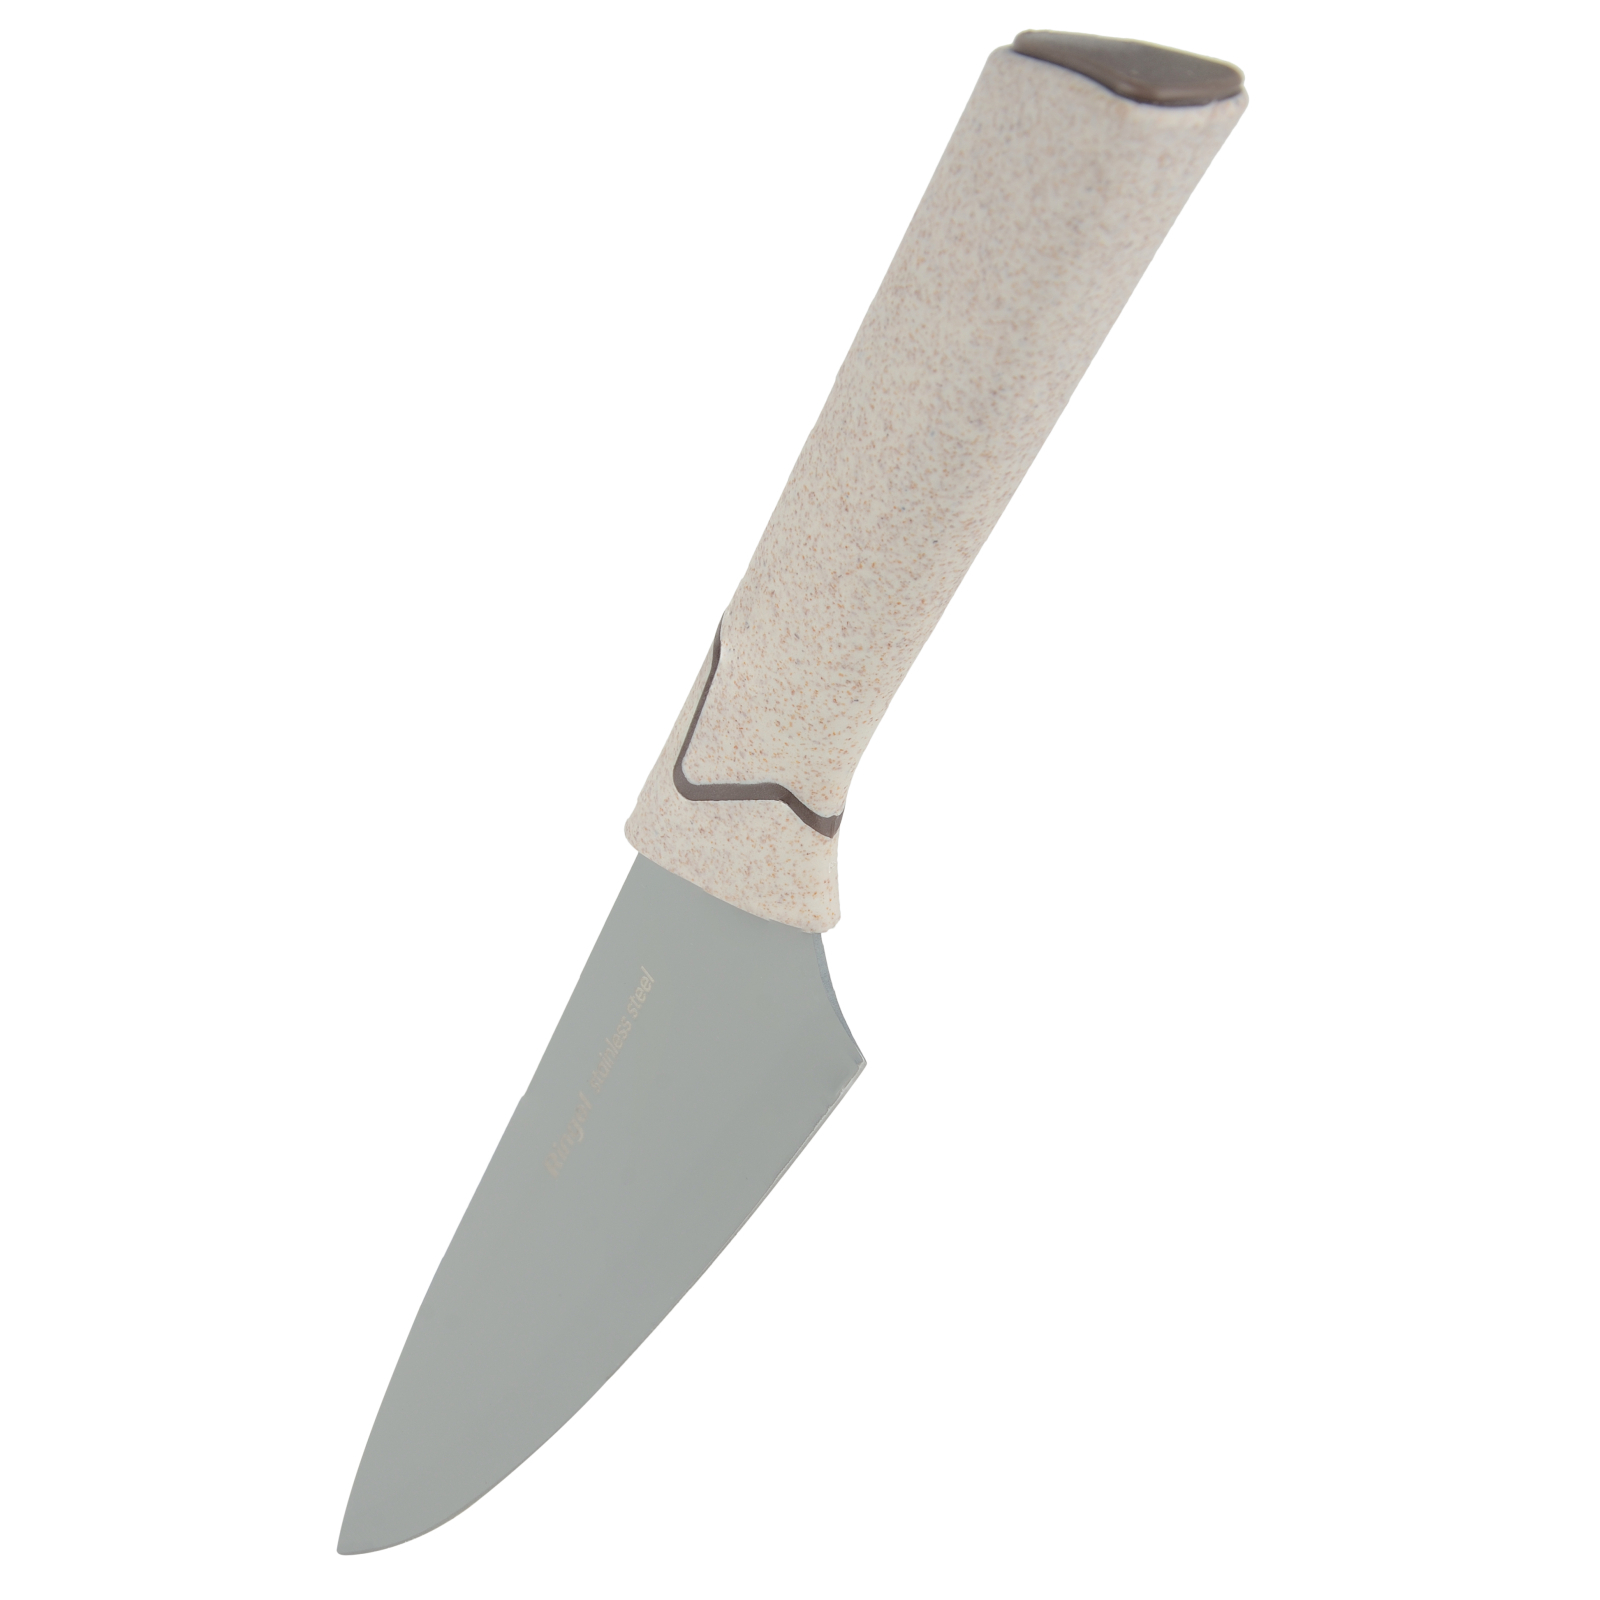 Кухонный нож Ringel Weizen 18 см (RG-11005-4) изображение 2